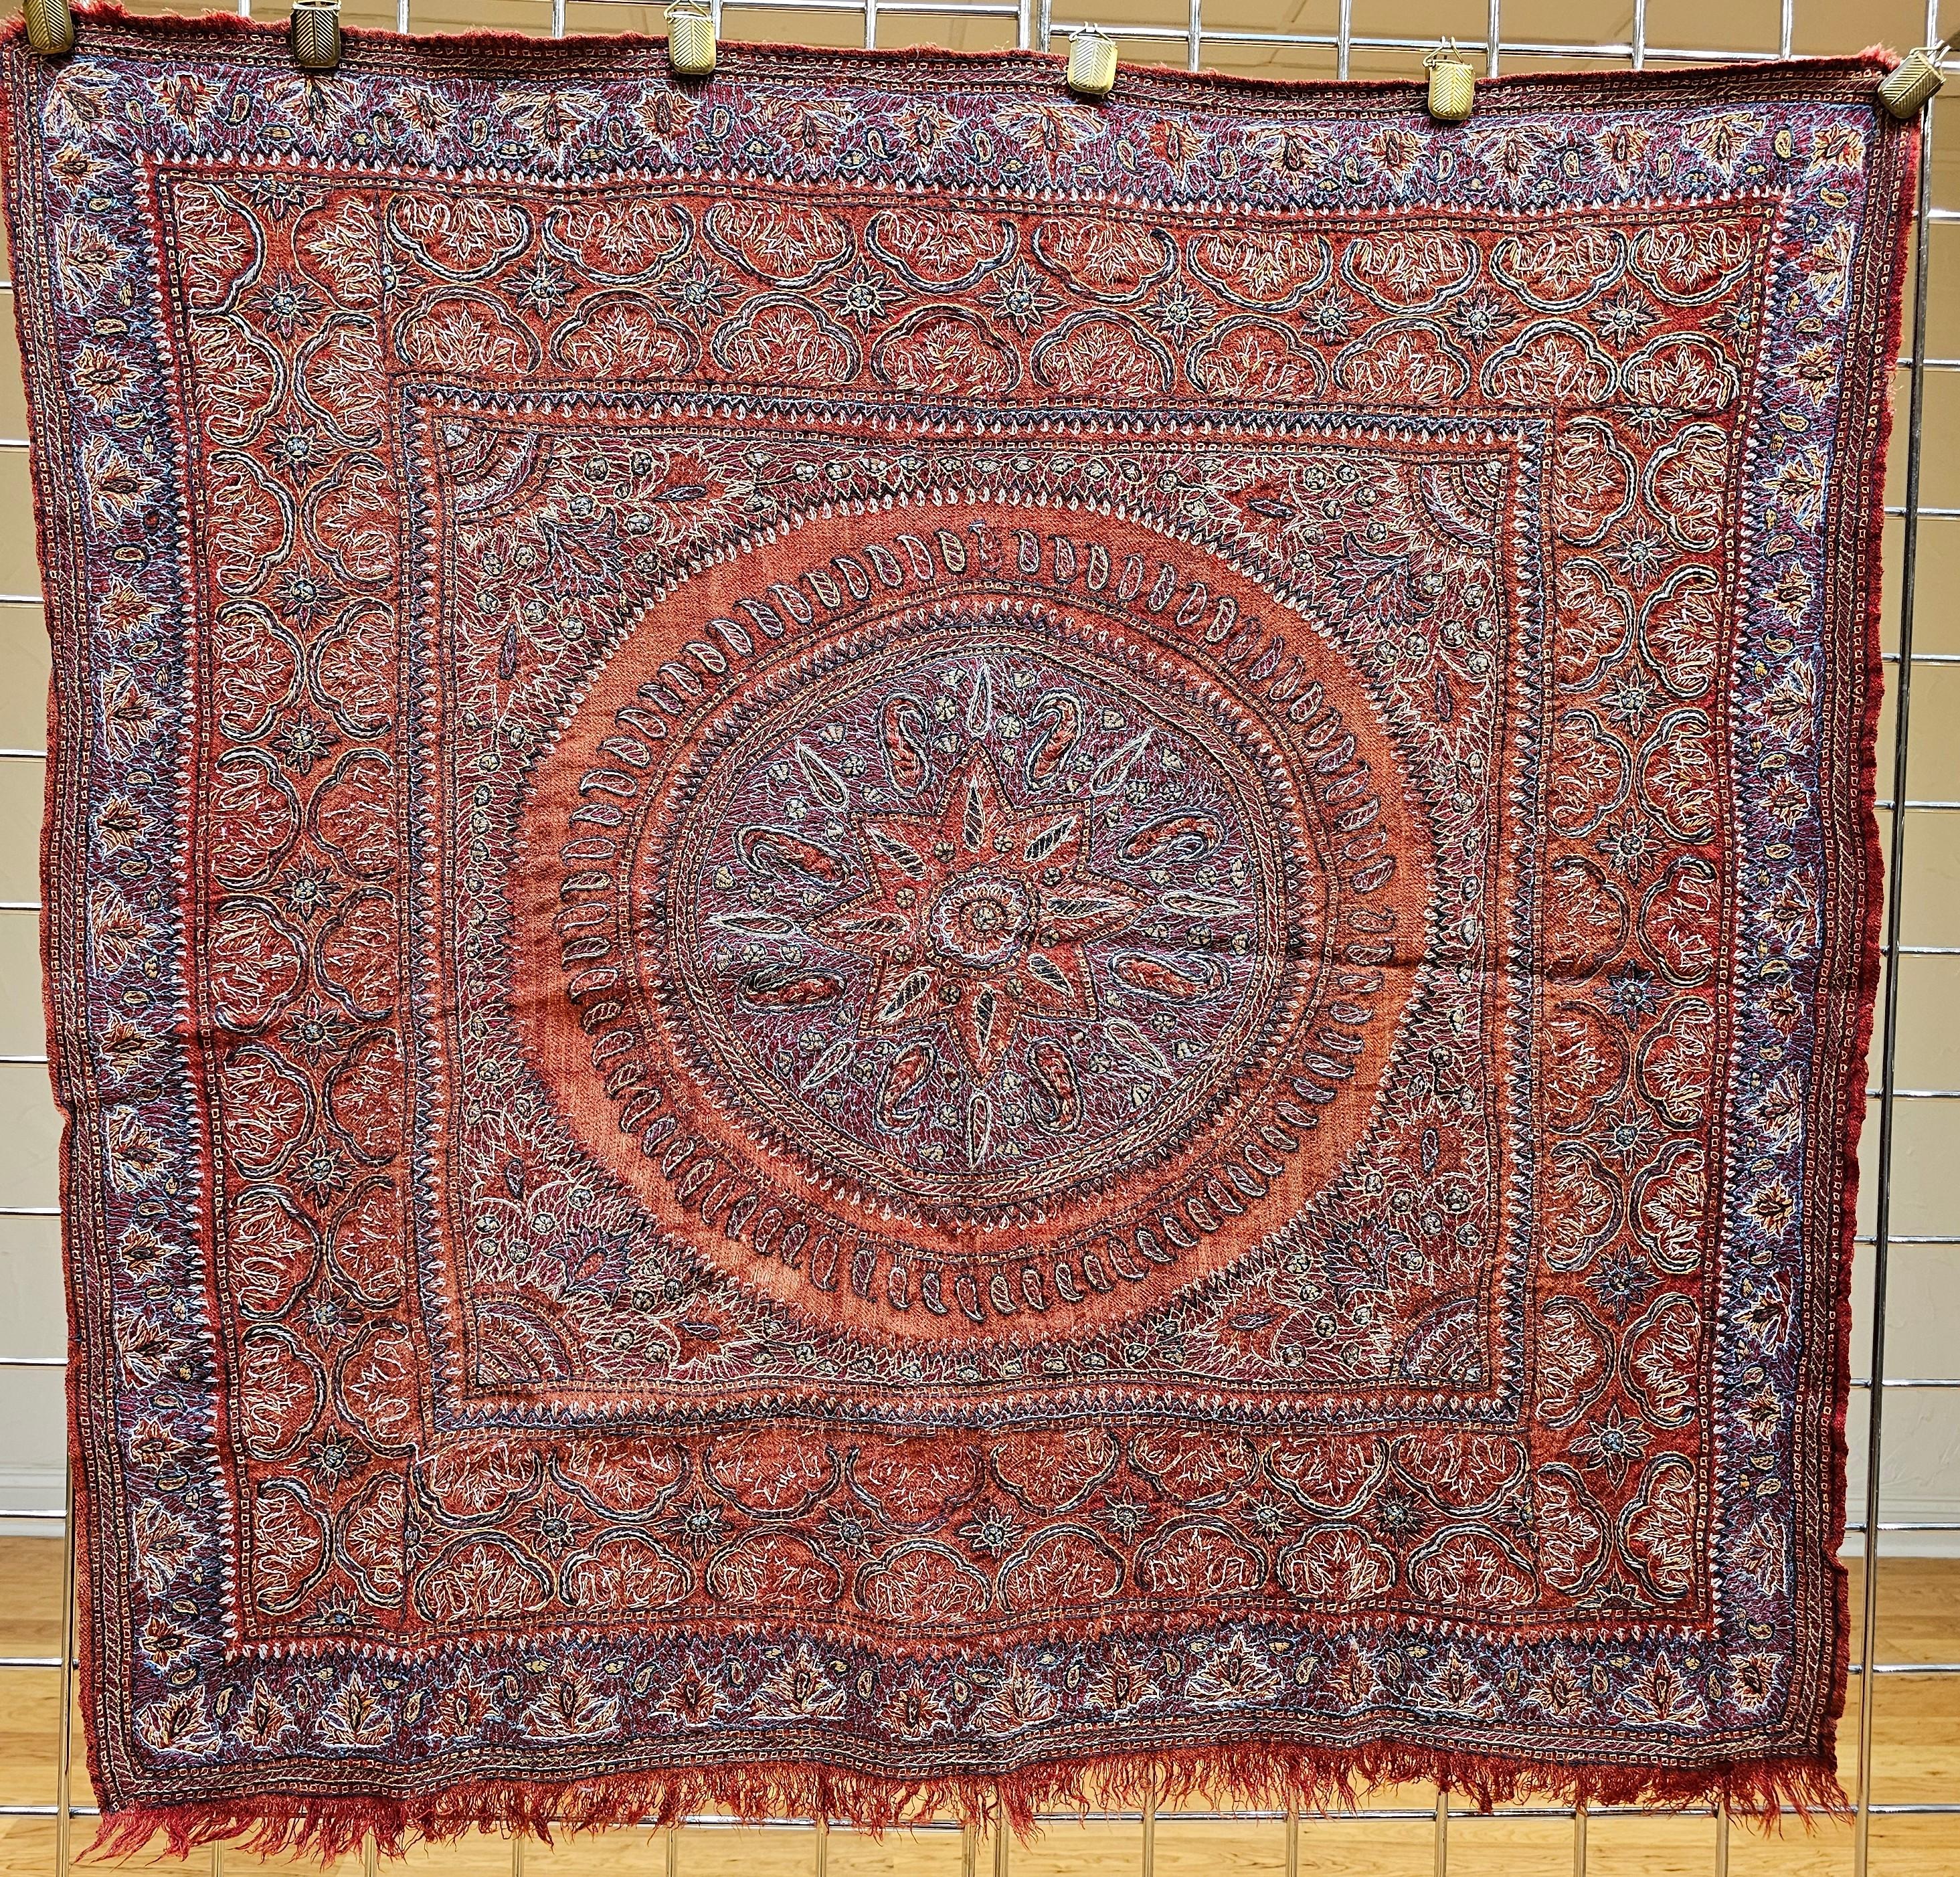 La broderie Kerman Suzani (Termeh en persan) est originaire de l'ancienne ville de Kerman en Perse. La tapisserie textile brodée à la main est sur un fond de tissu rouge avec des motifs de broderie en bleu, violet, jaune et marron. La pièce en